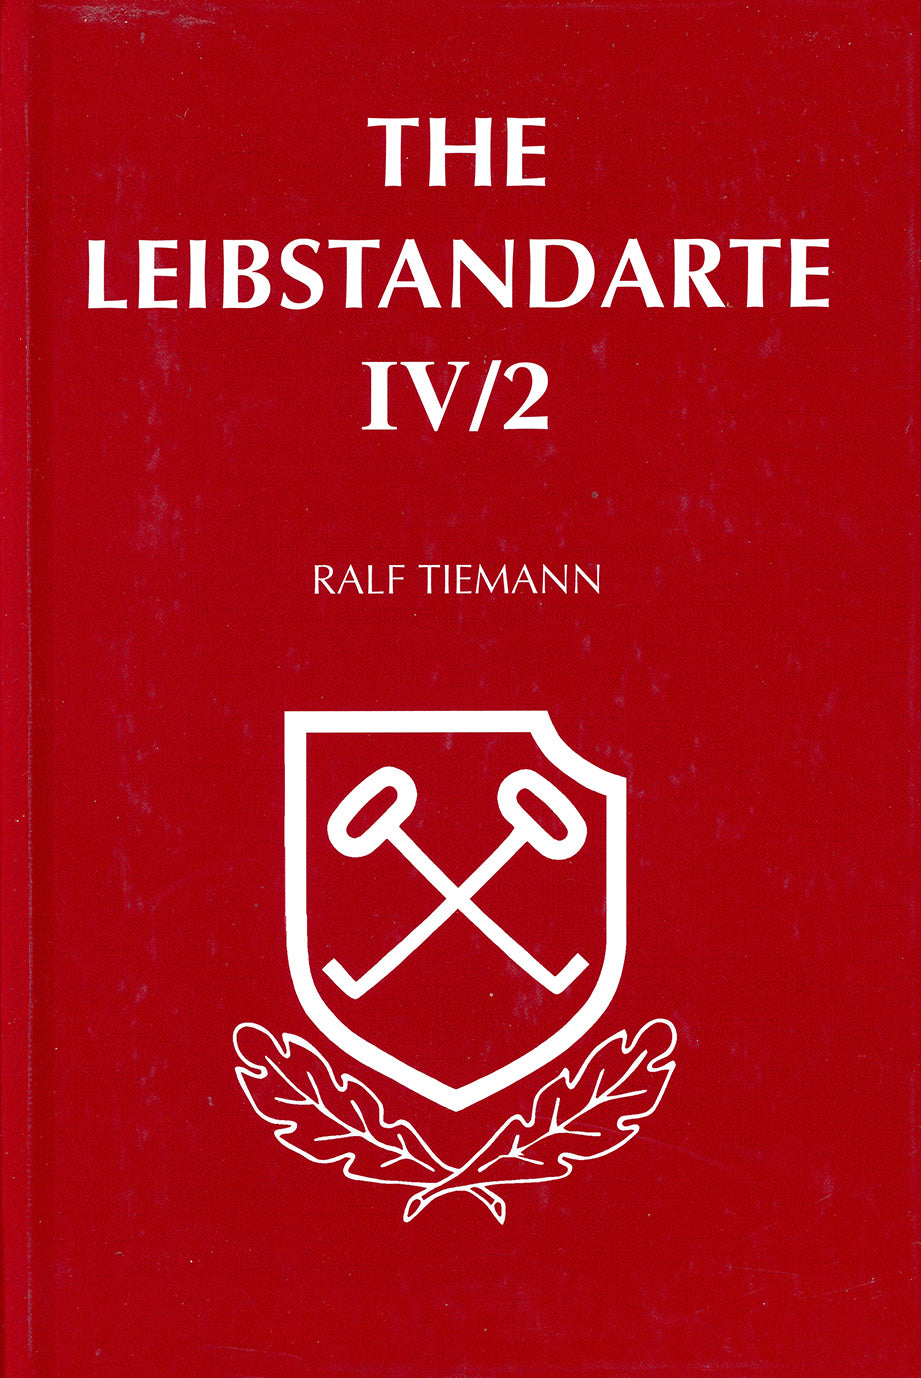 The Leibstandarte Vol. IV/2